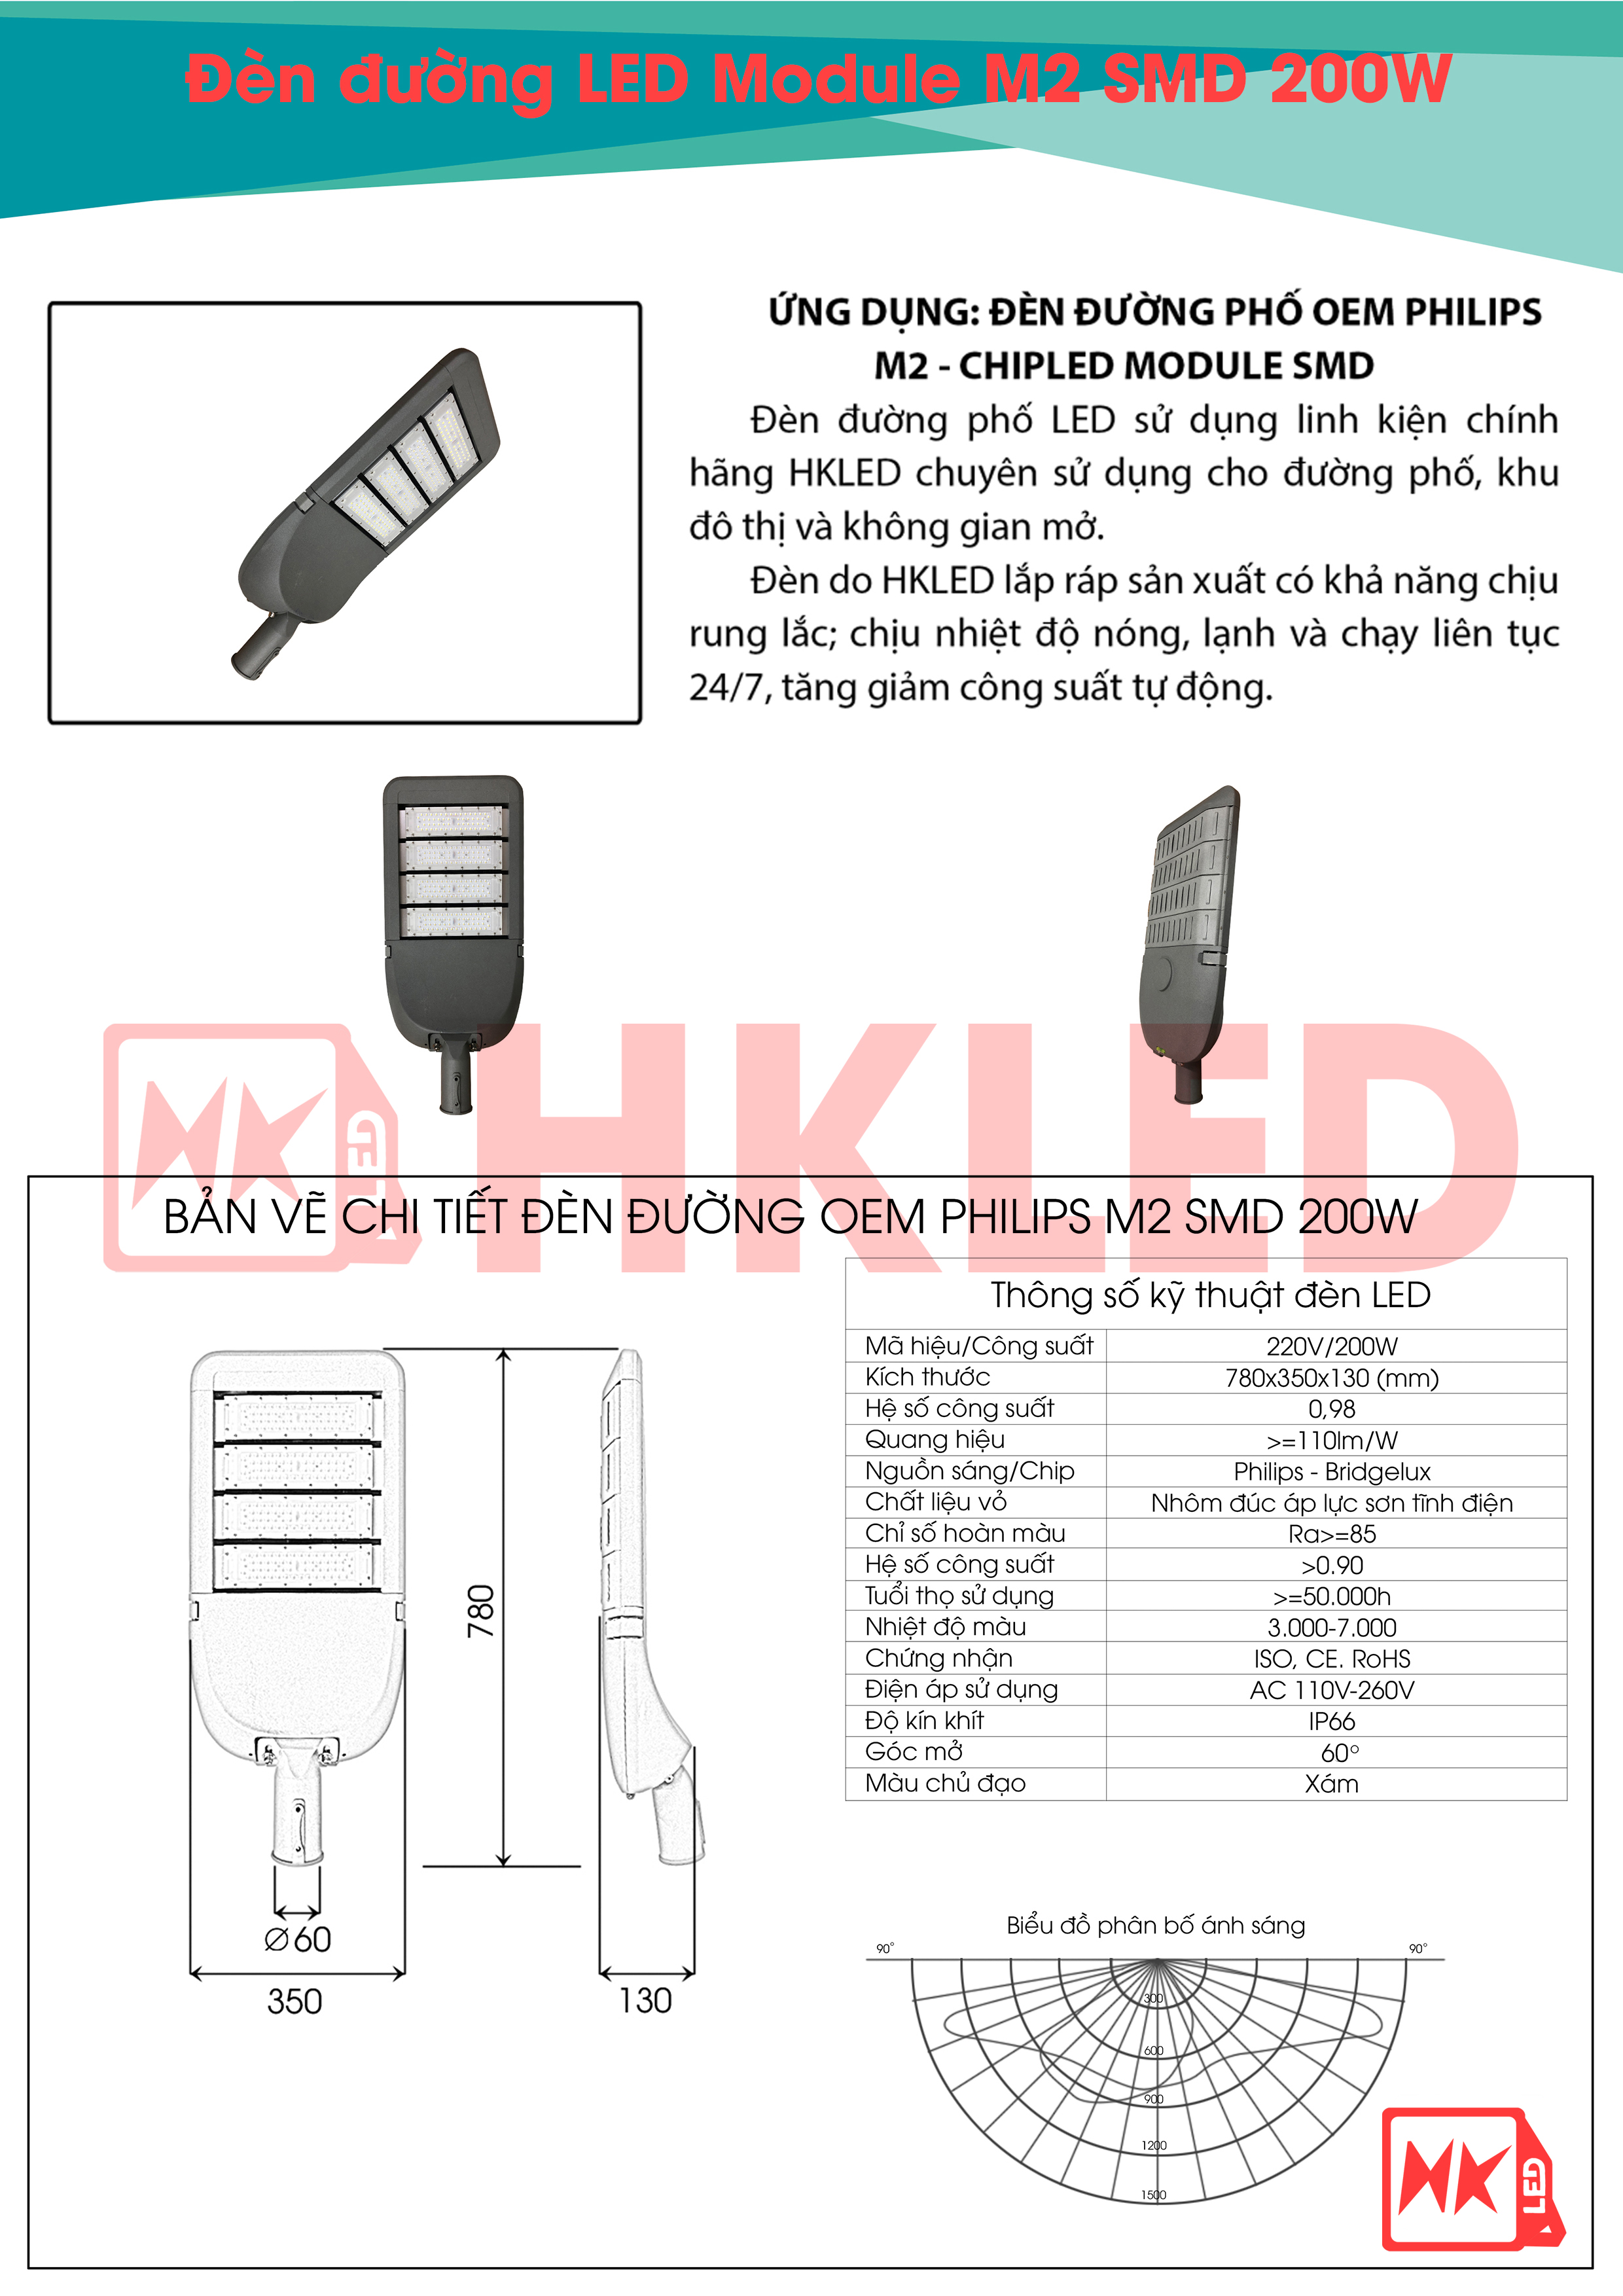 Ứng dụng, bản vẽ chi tiết và thông số kỹ thuật đèn đường LED OEM Philips Module SMD M2 200W